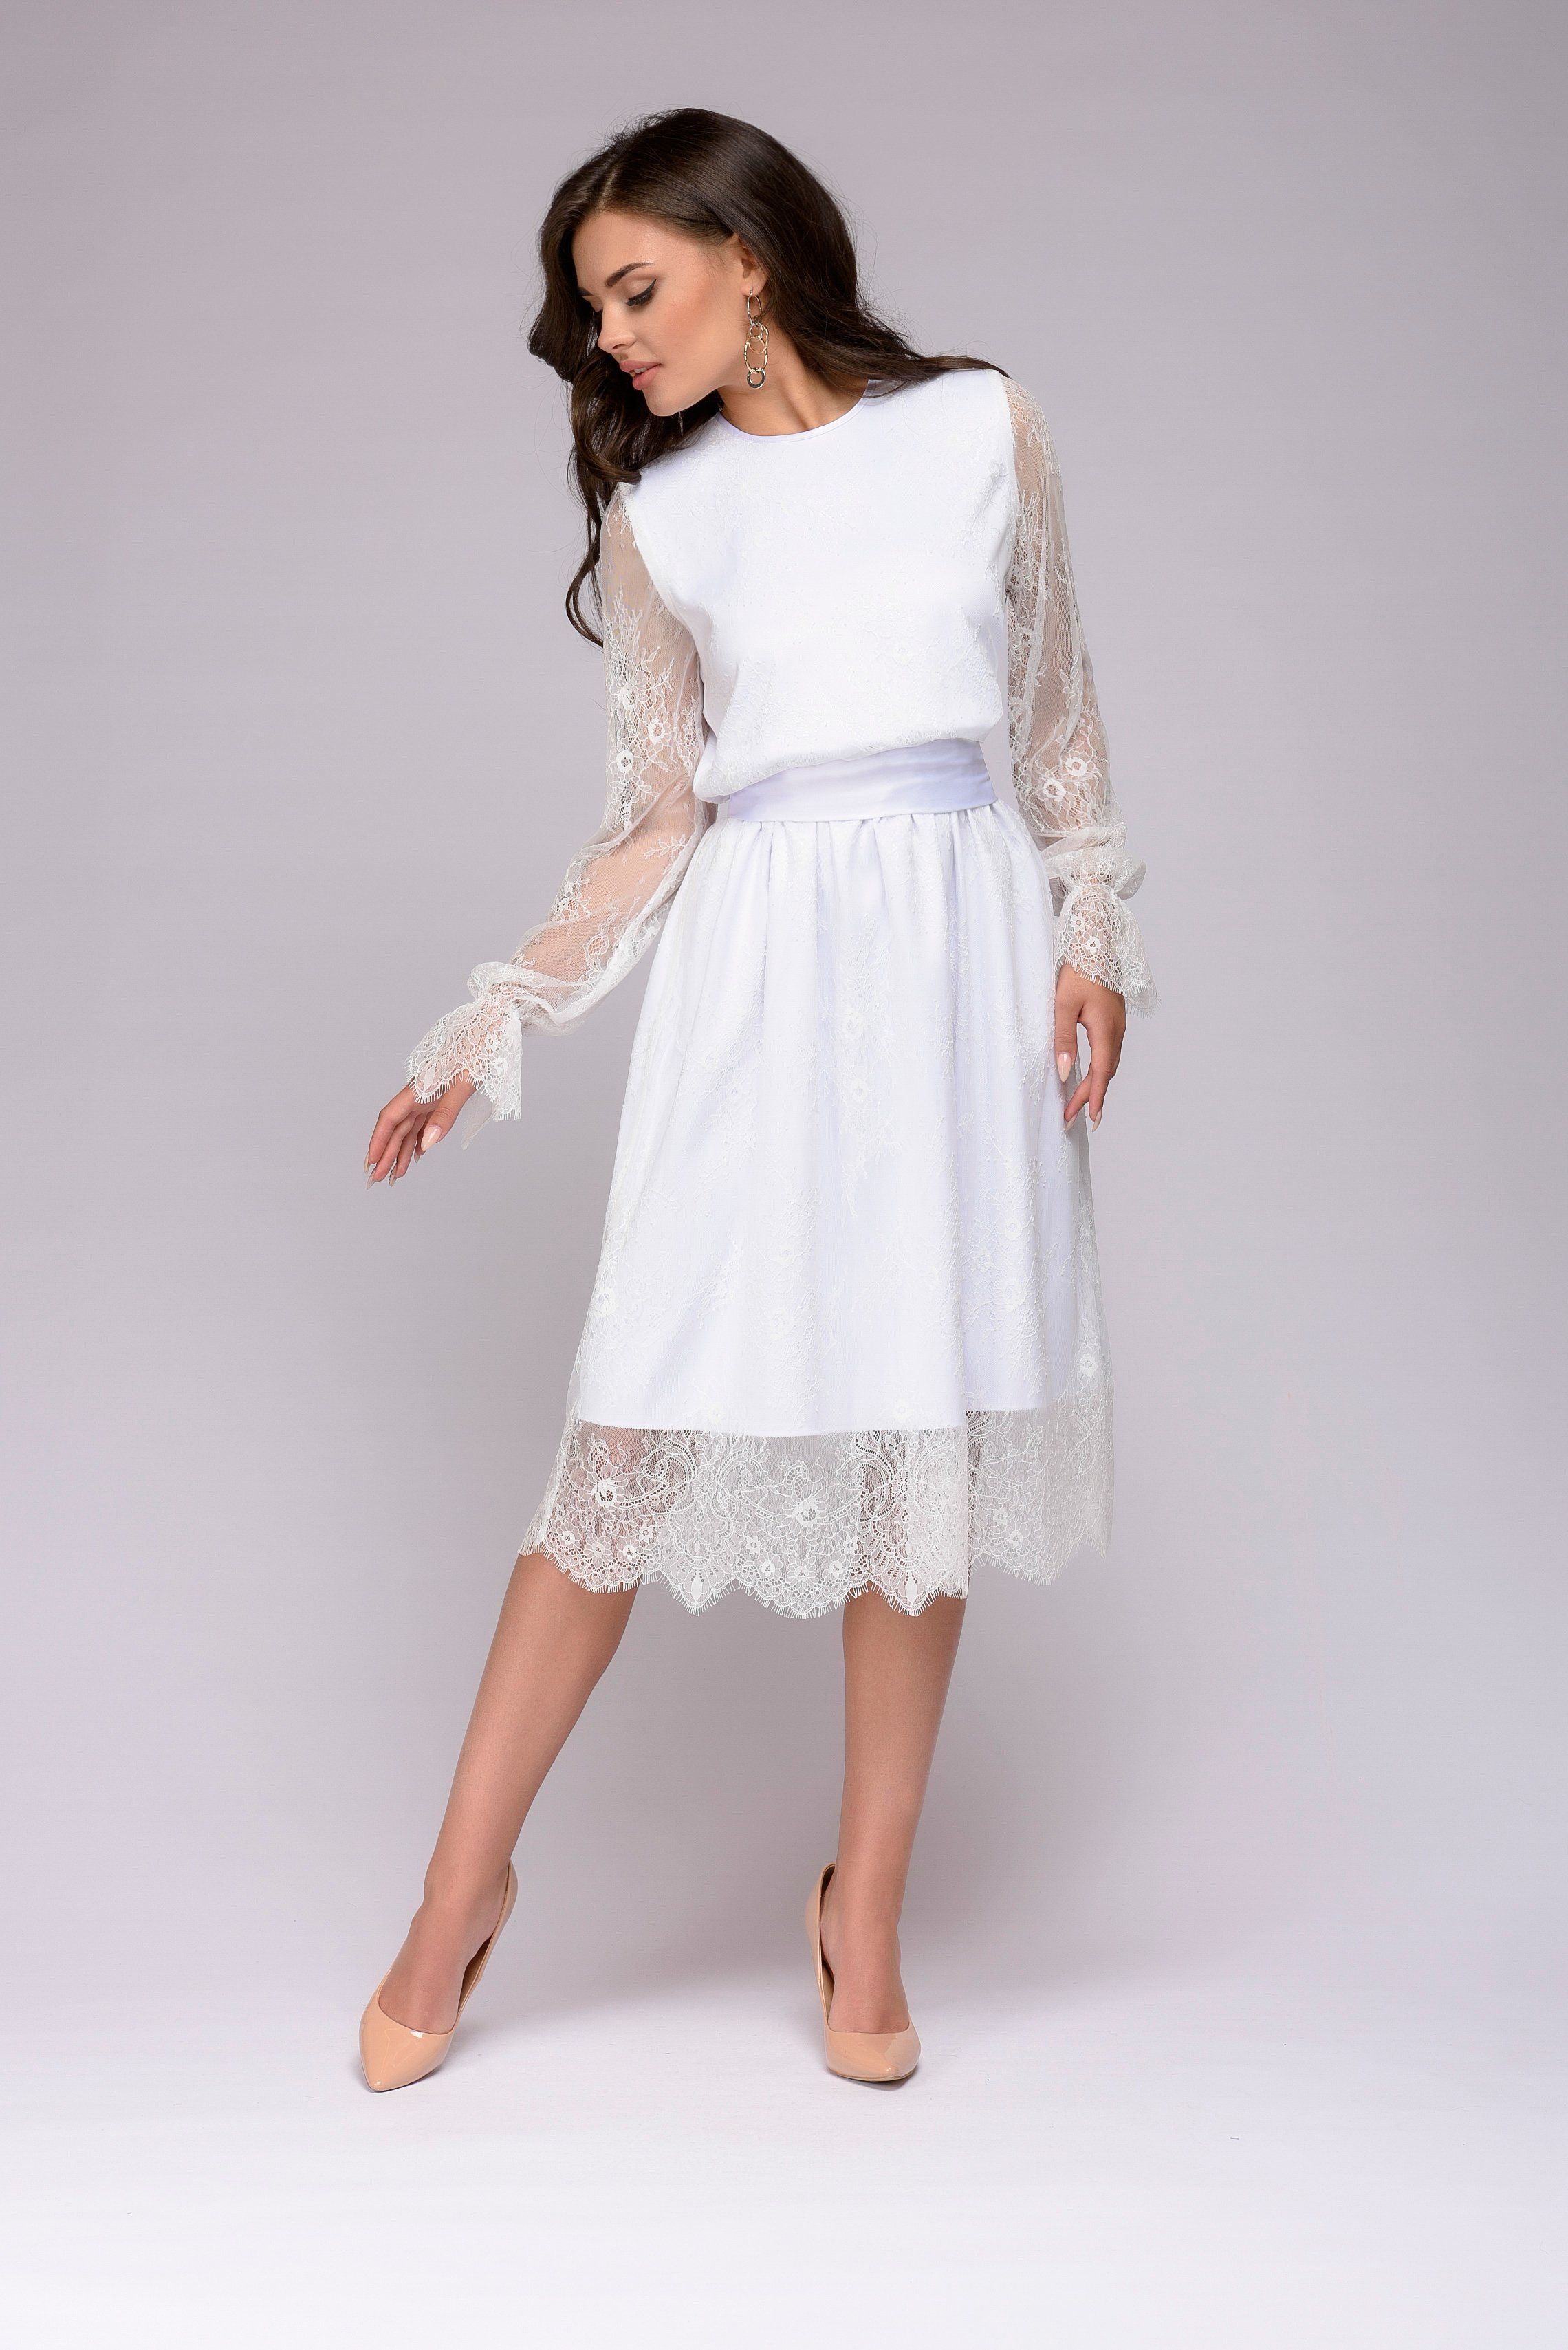 1001 Dress белое платье